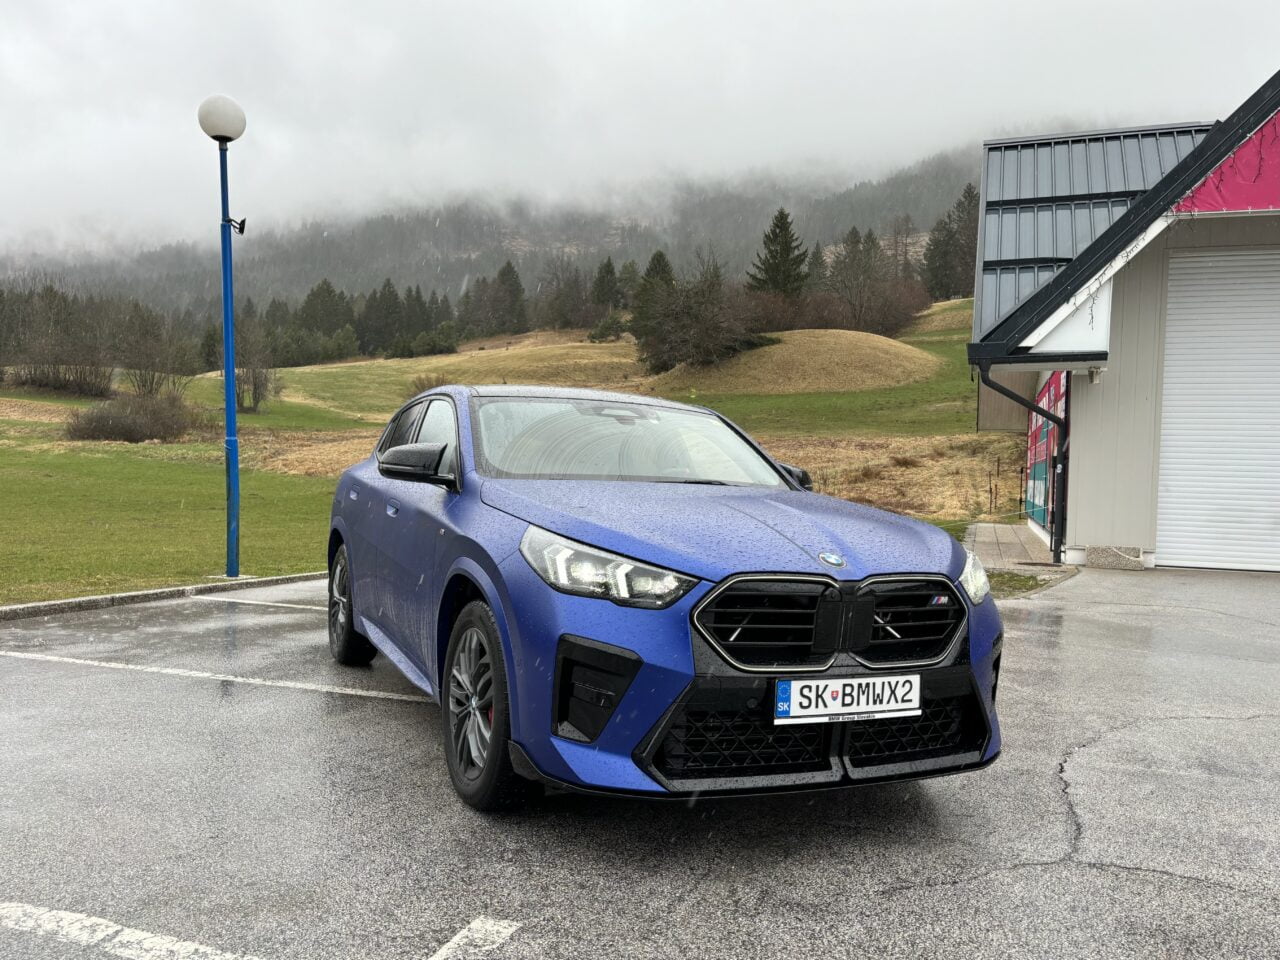 Niebieski samochód marki BMW zaparkowany na mokrym parkingu z widokiem na zielone wzgórza i gęstą mgłę w tle.